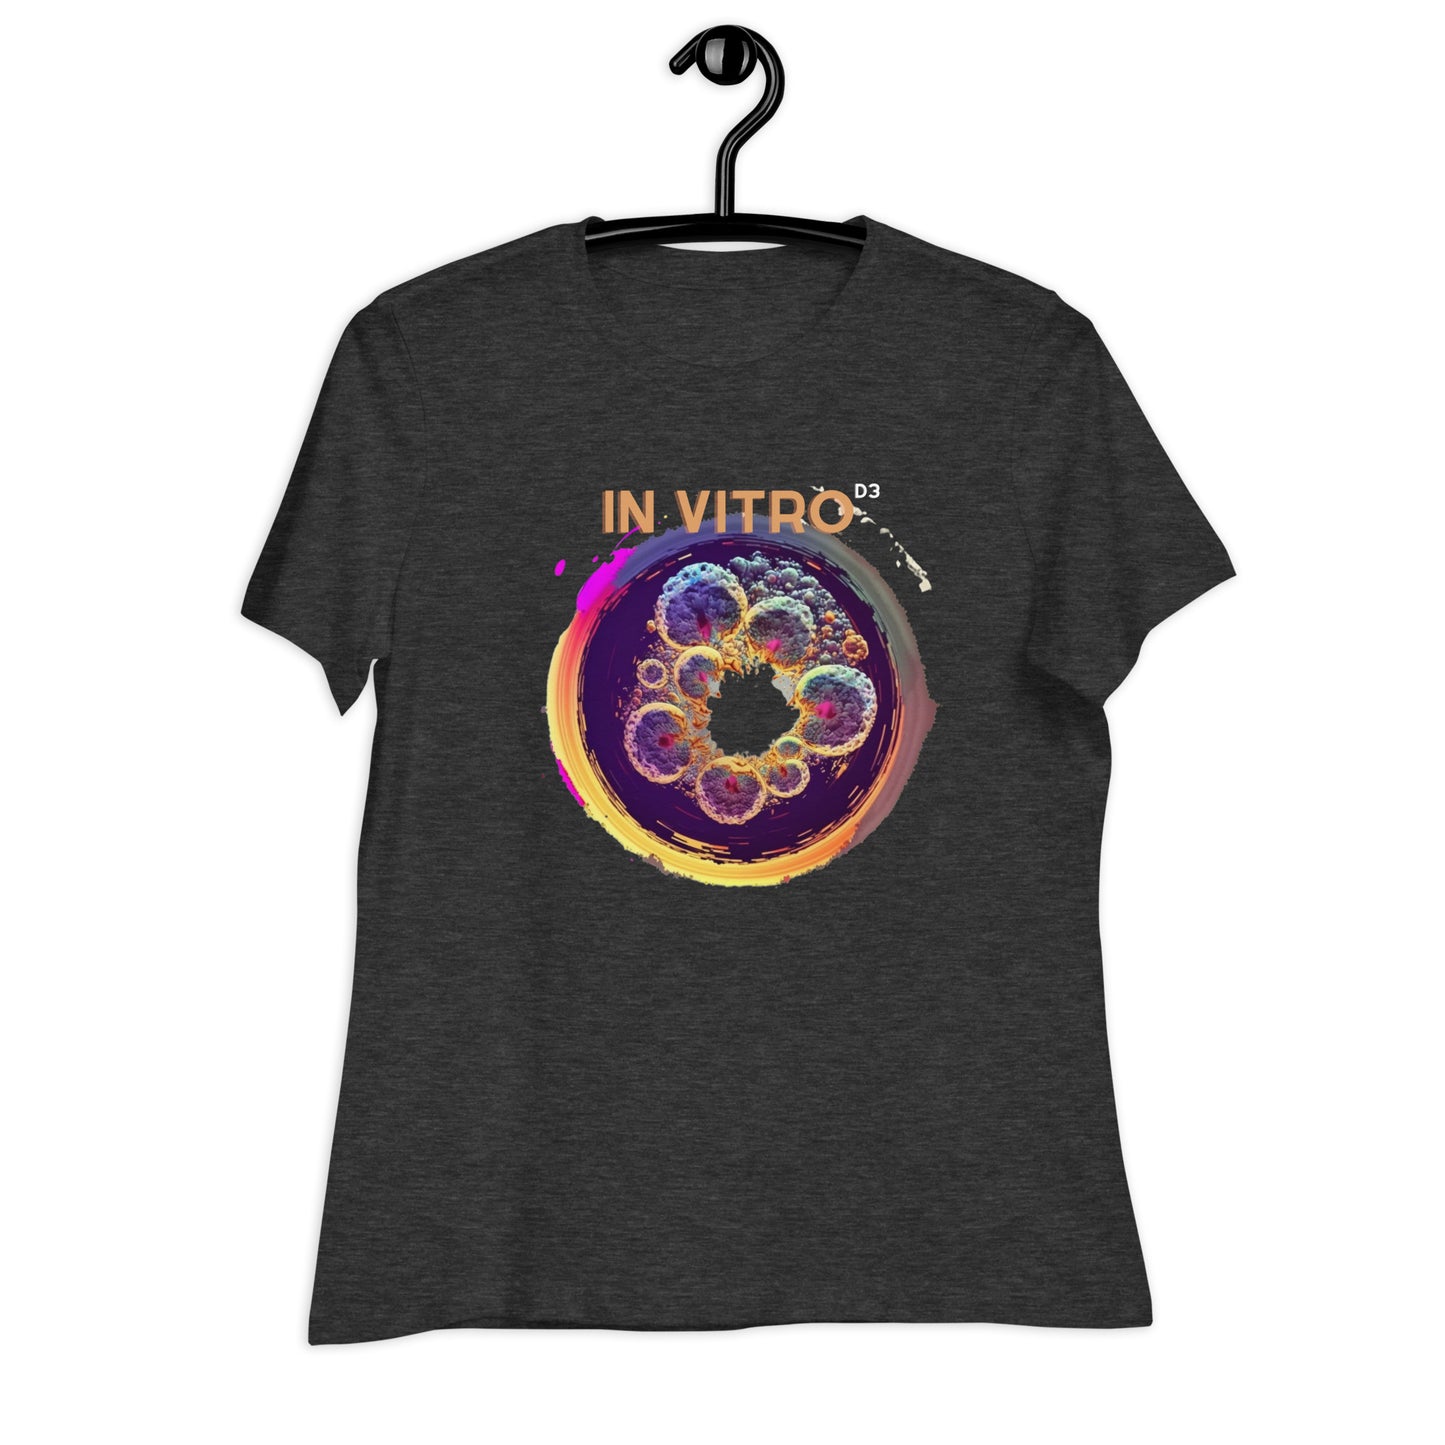 Camiseta In vitro D3